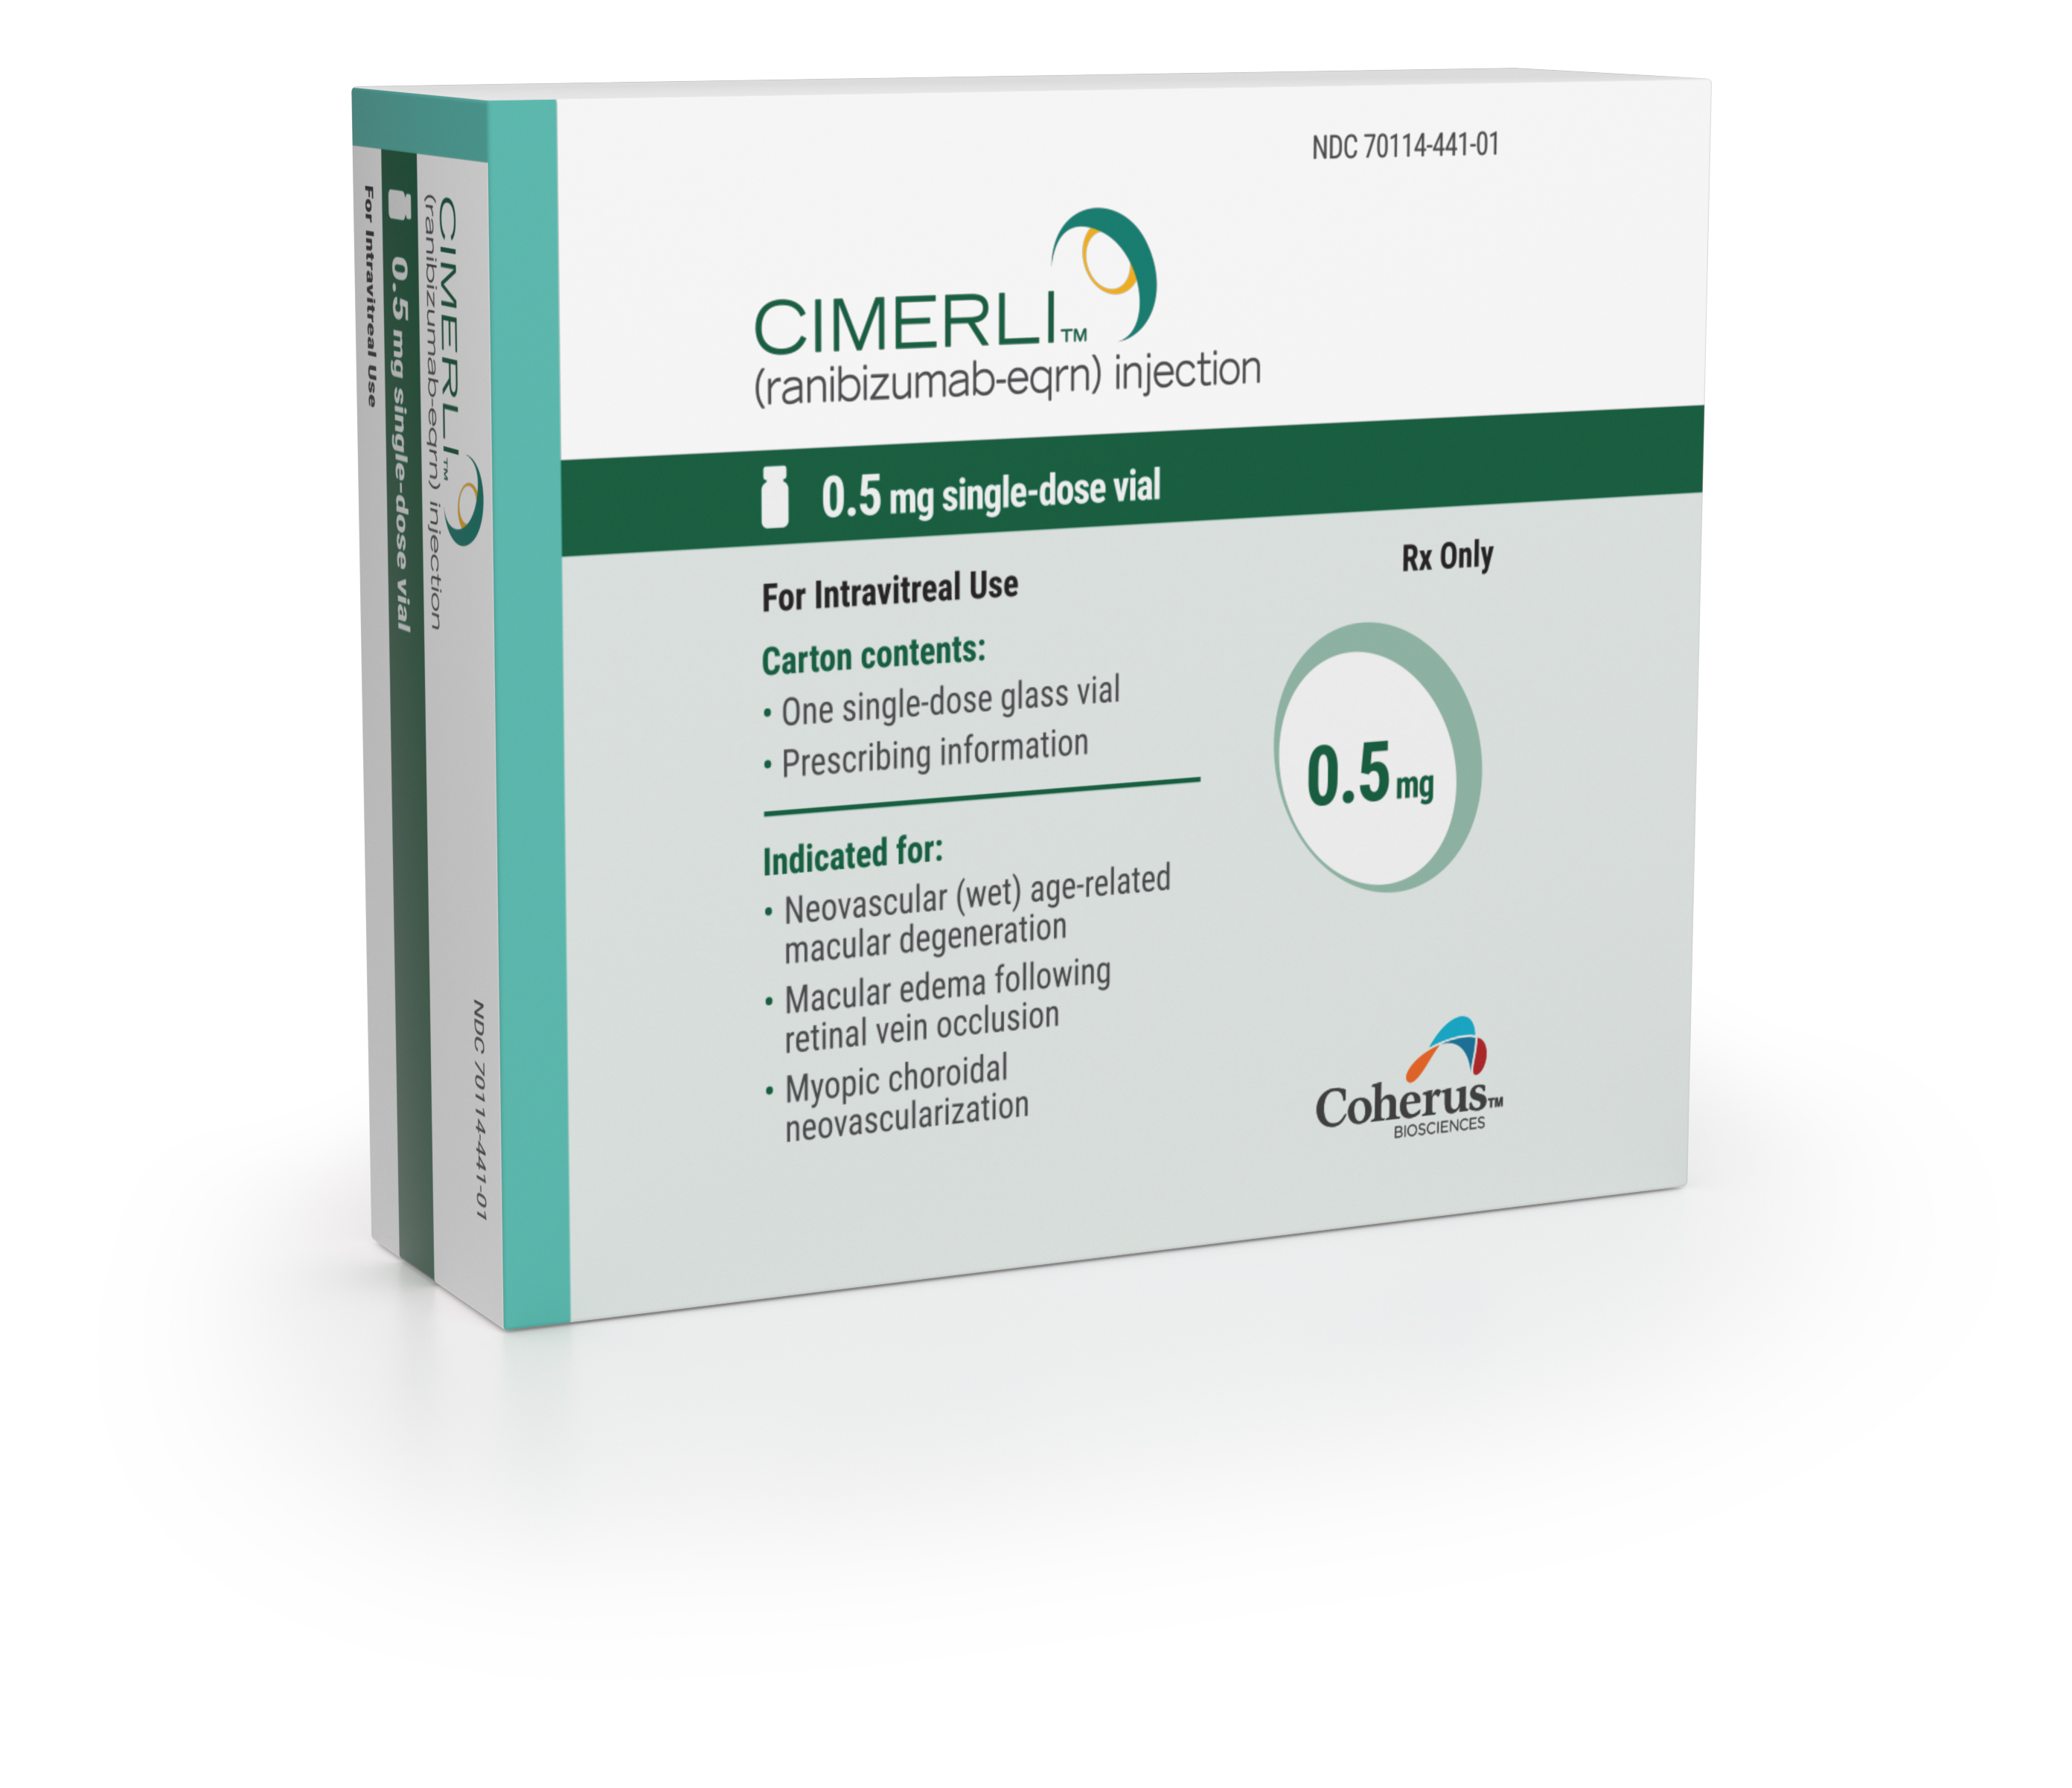 CIMERLI™ (ranibizumab-eqrn) 0.5 mg product image